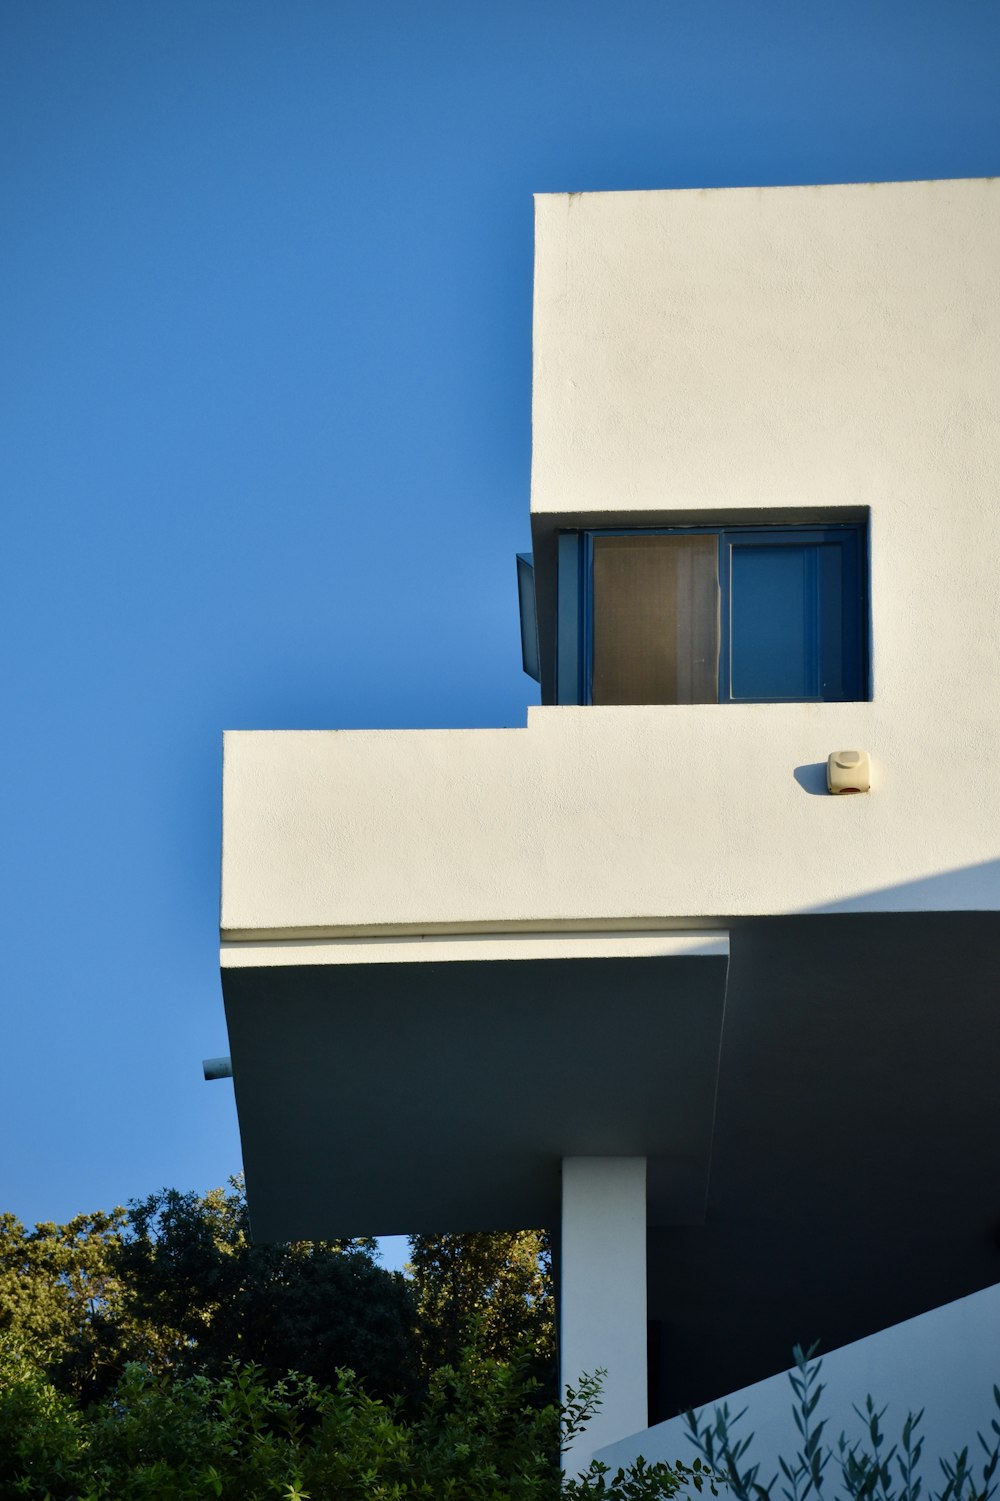 edifício de concreto branco com janela azul